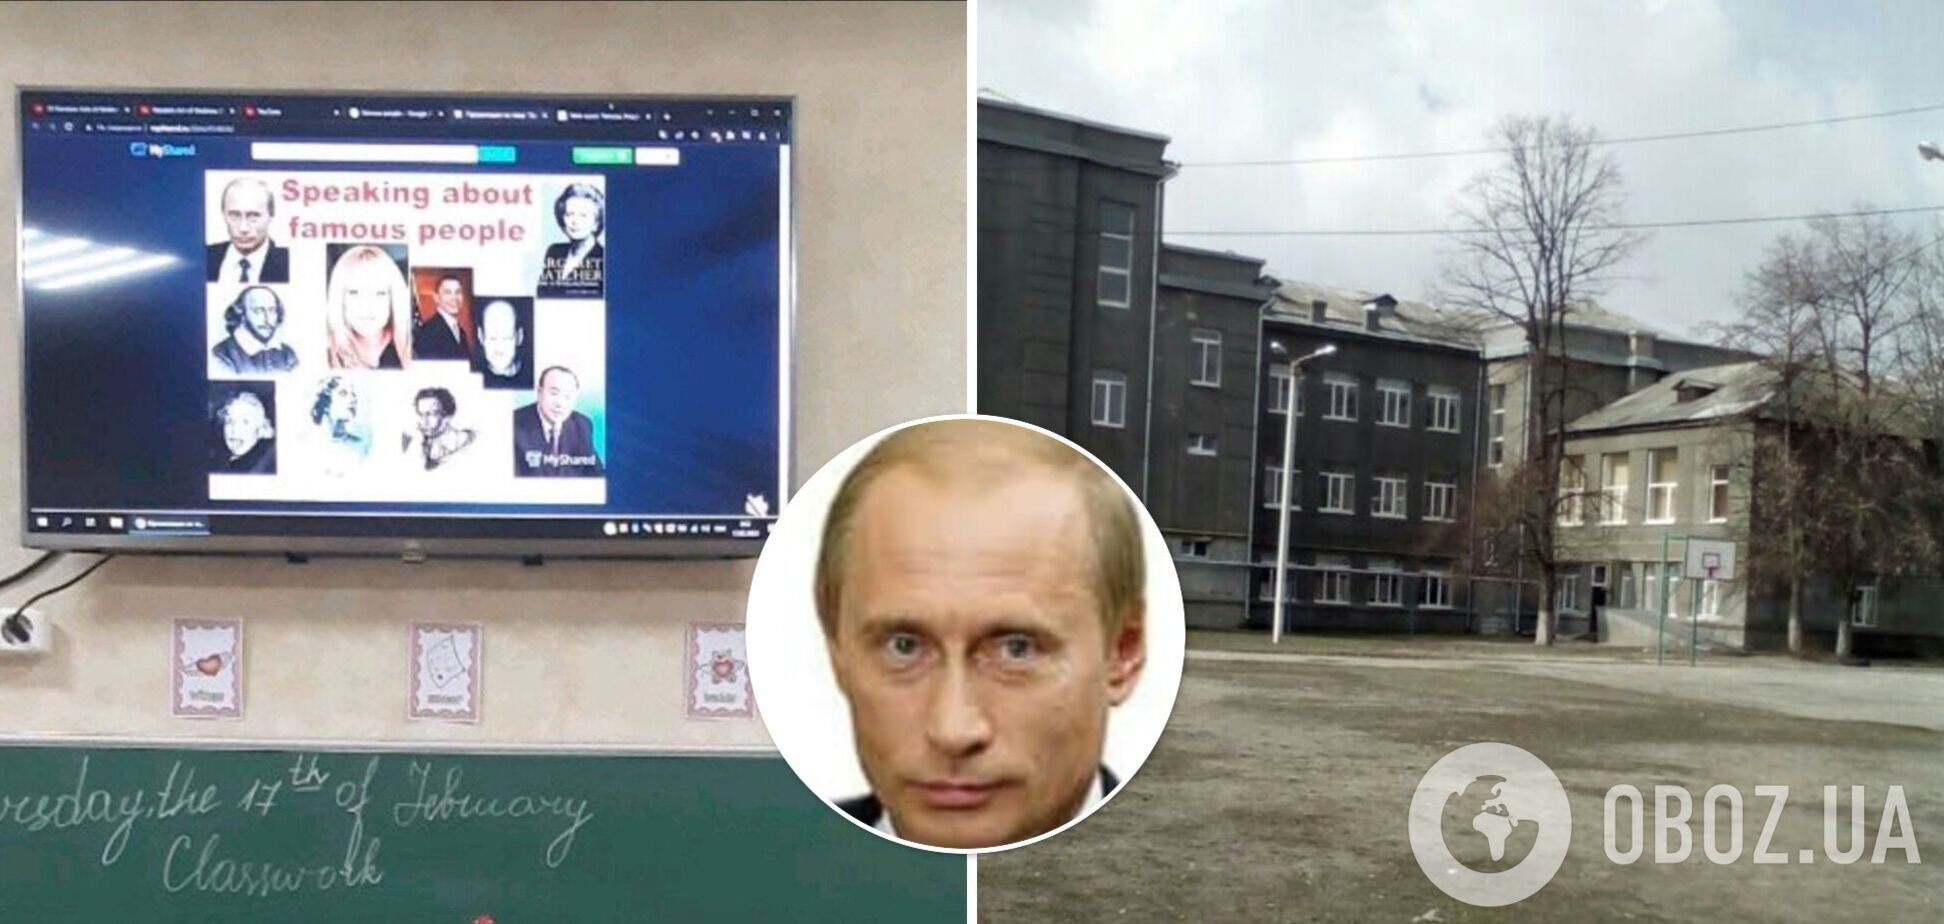 Учитель харьковской школы использовал для урока презентацию с российского сервиса